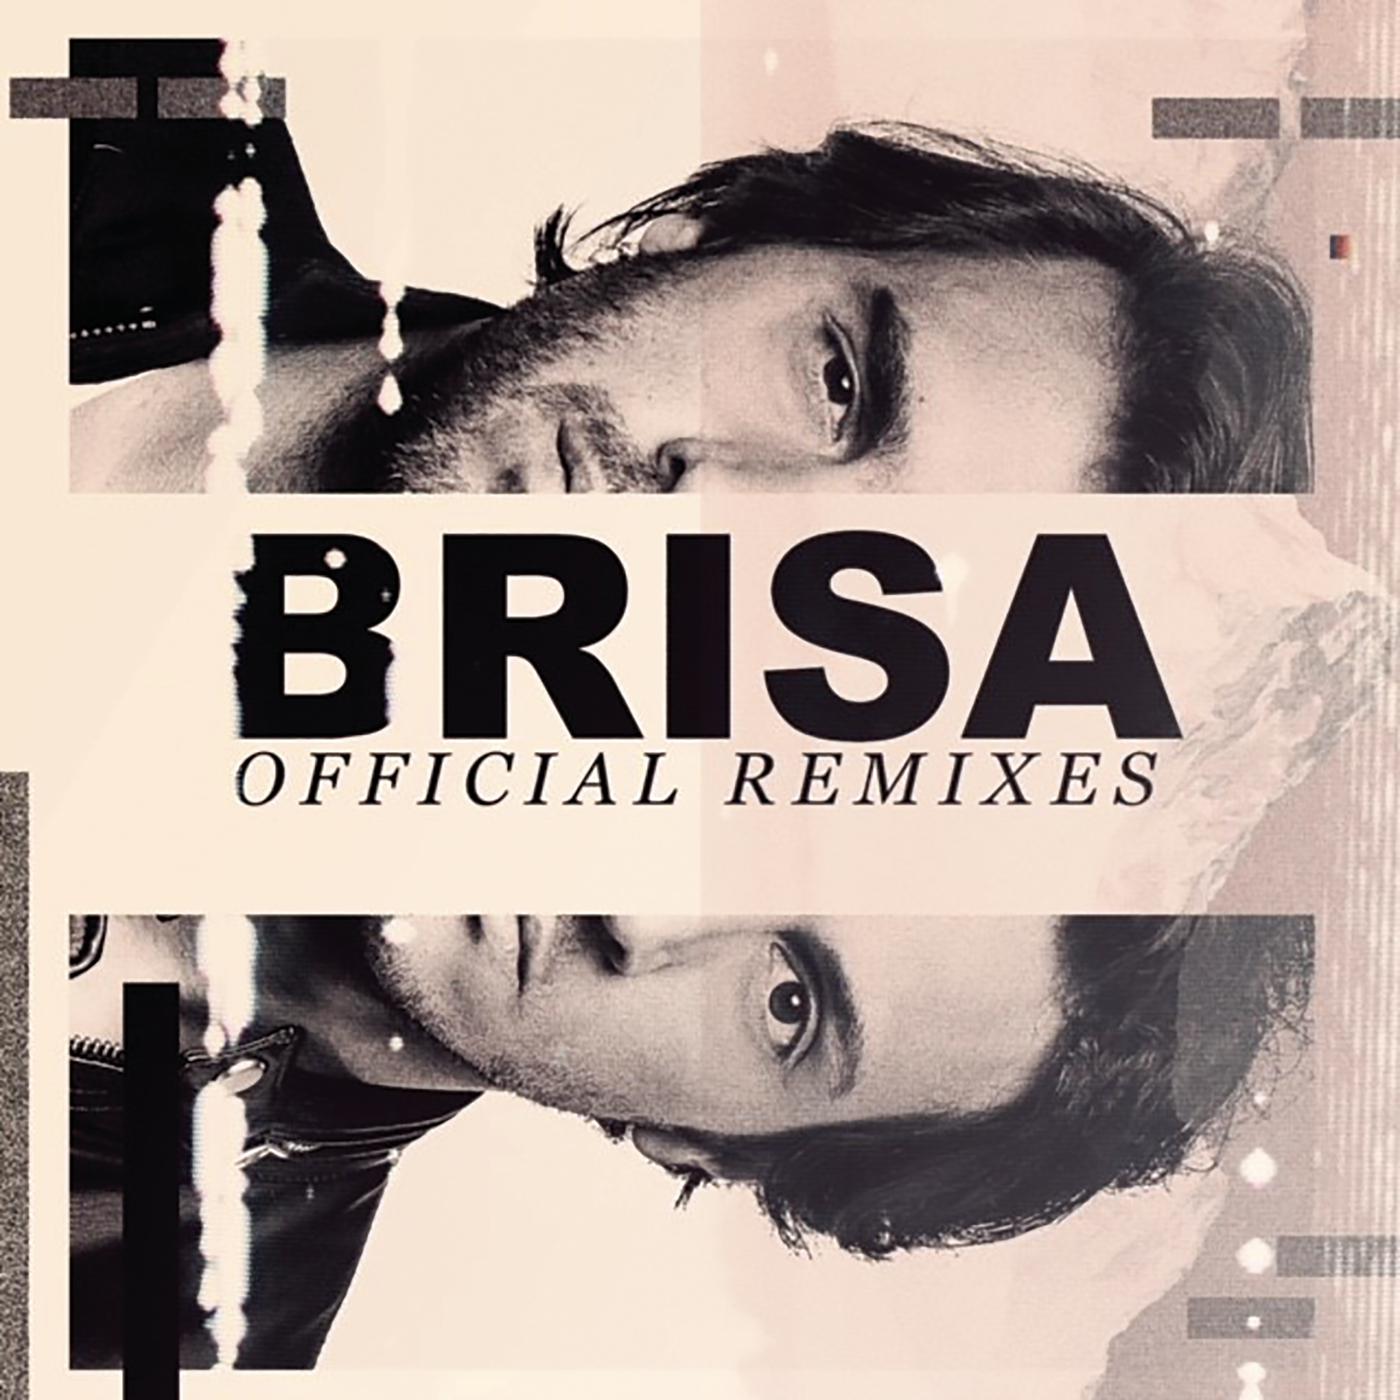 Jetlag Music - Brisa (ETTO Remix)